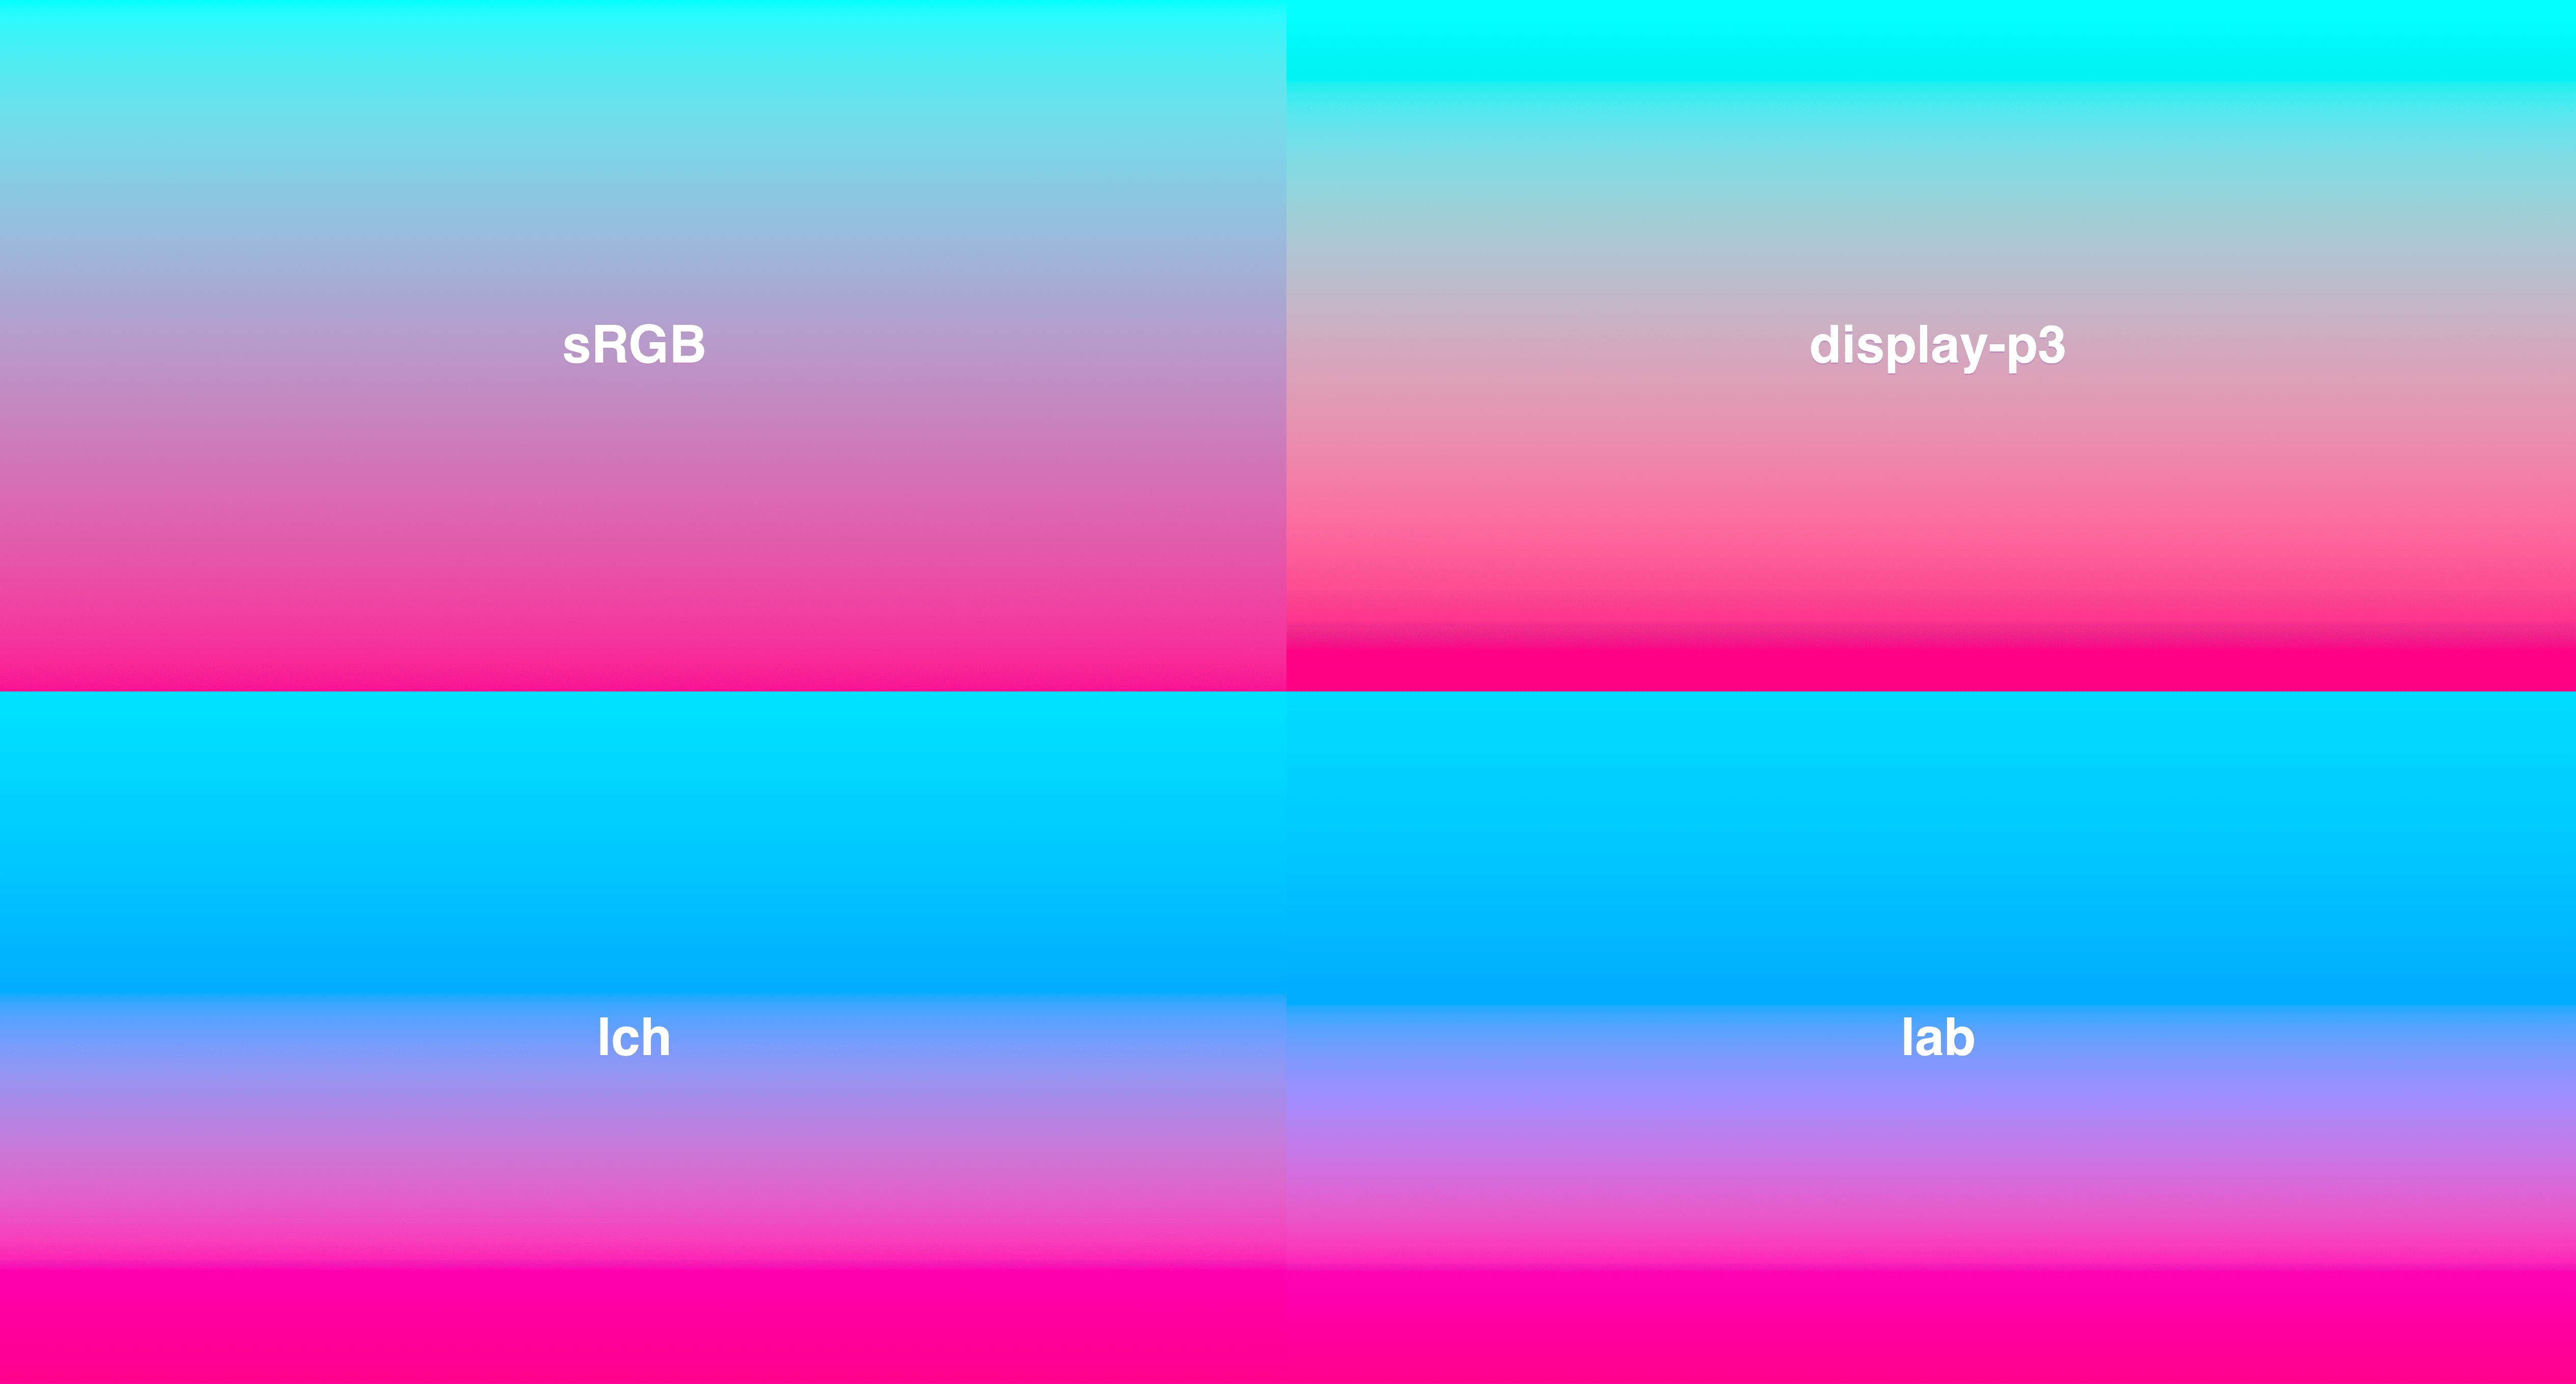 4 màu dạng lưới, tất cả từ màu lục lam đến màu hồng đậm. LCH và LAB có sự sống động nhất quán hơn, trong đó sRGB có phần khử bão hoà một chút ở giữa.